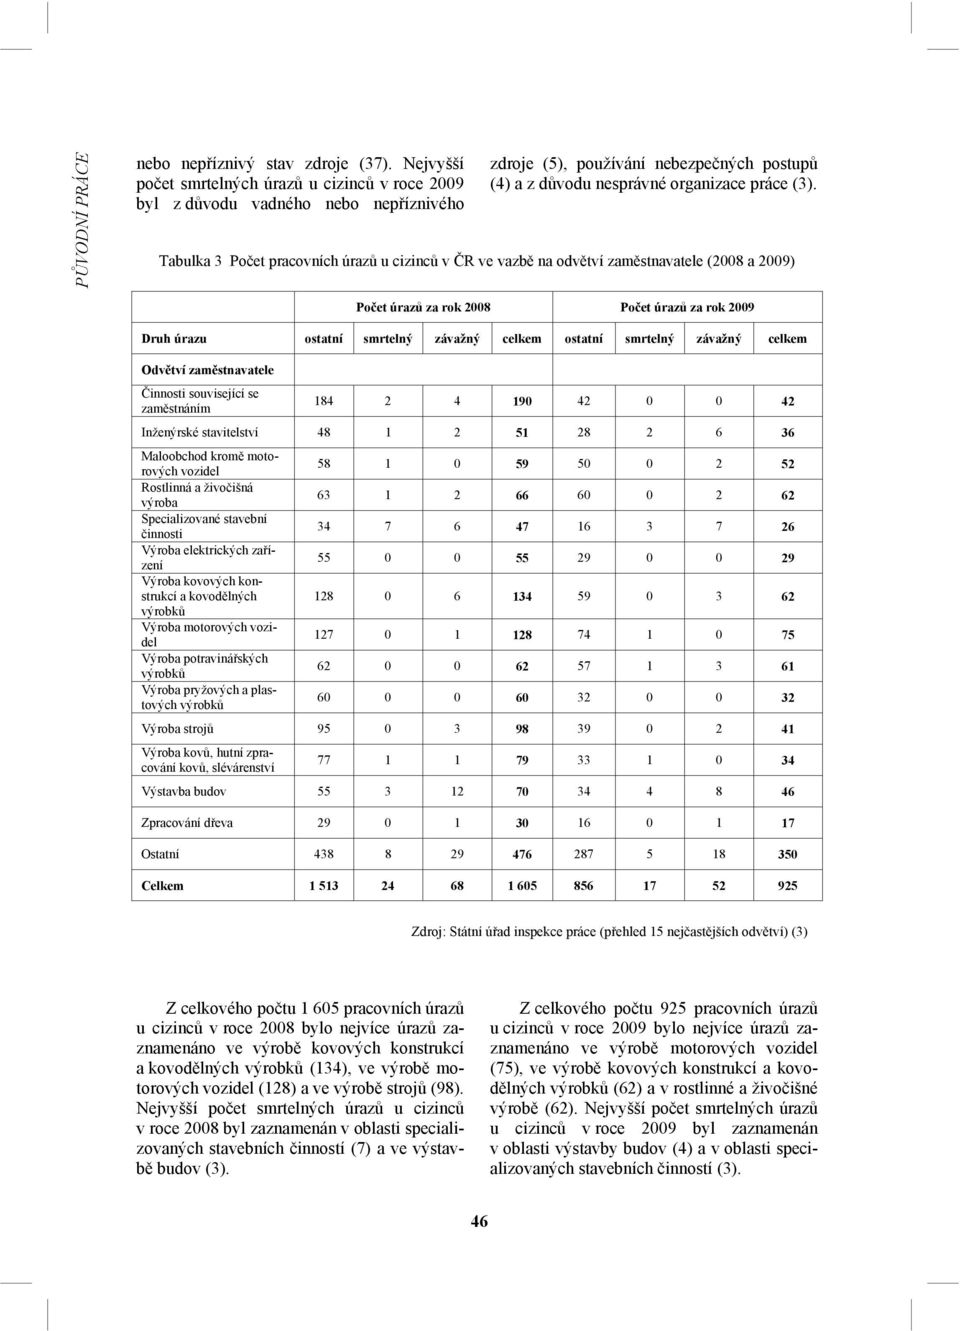 Tabulka 3 Počet pracovních úrazů u cizinců v ČR ve vazbě na odvětví zaměstnavatele (2008 a 2009) Počet úrazů za rok 2008 Počet úrazů za rok 2009 Druh úrazu ostatní smrtelný závažný celkem ostatní